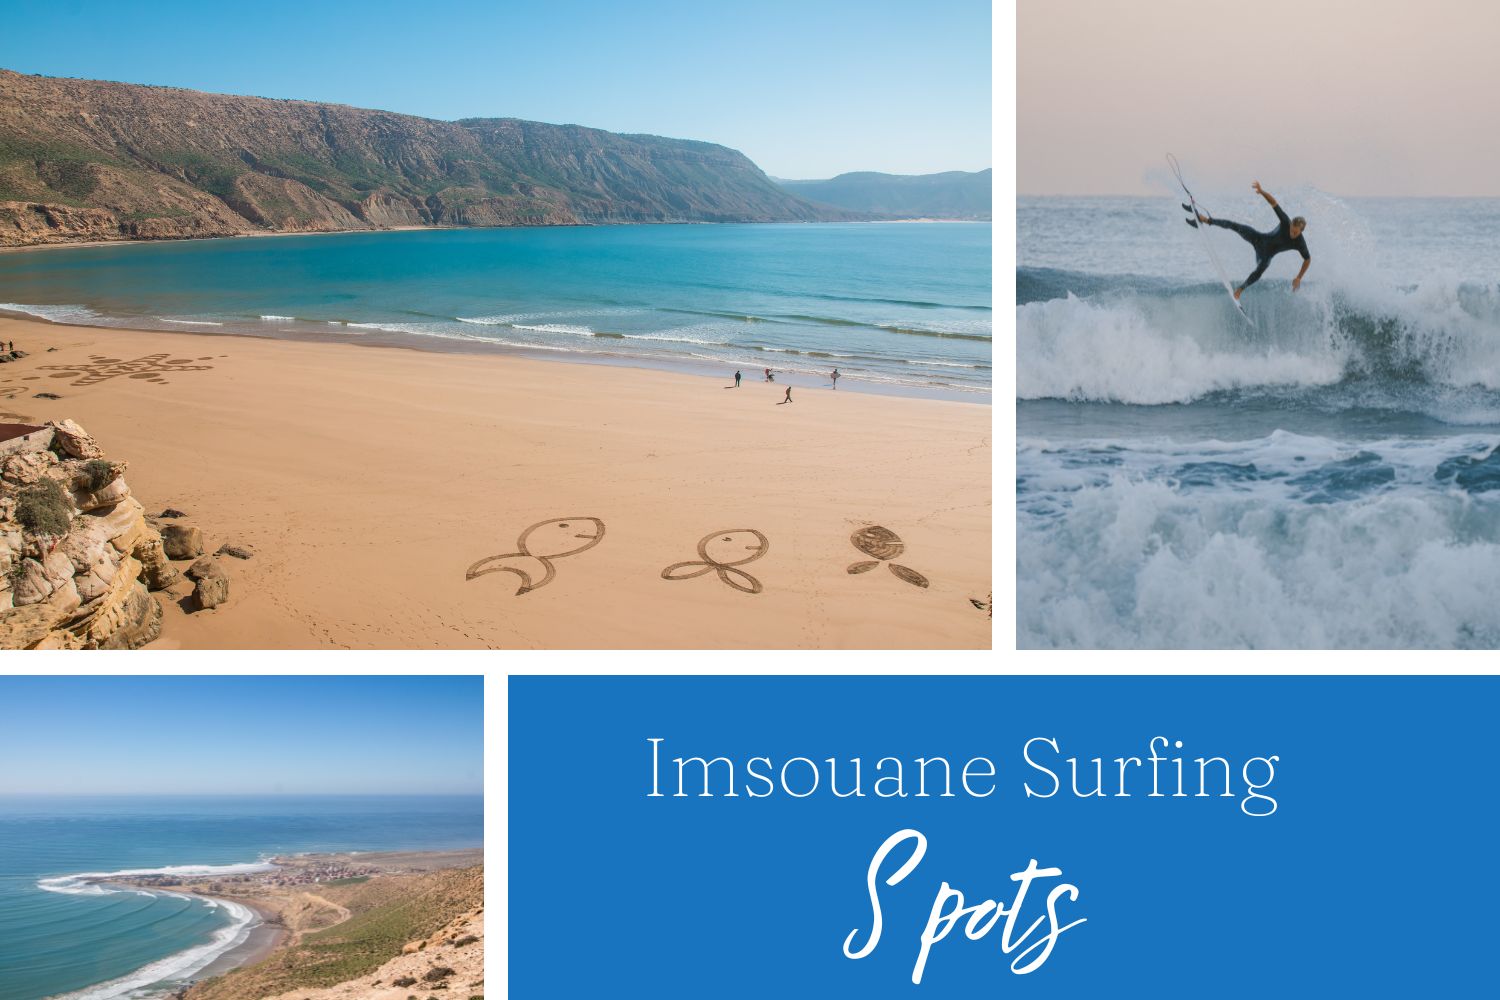 Imsouane Surfing Spots